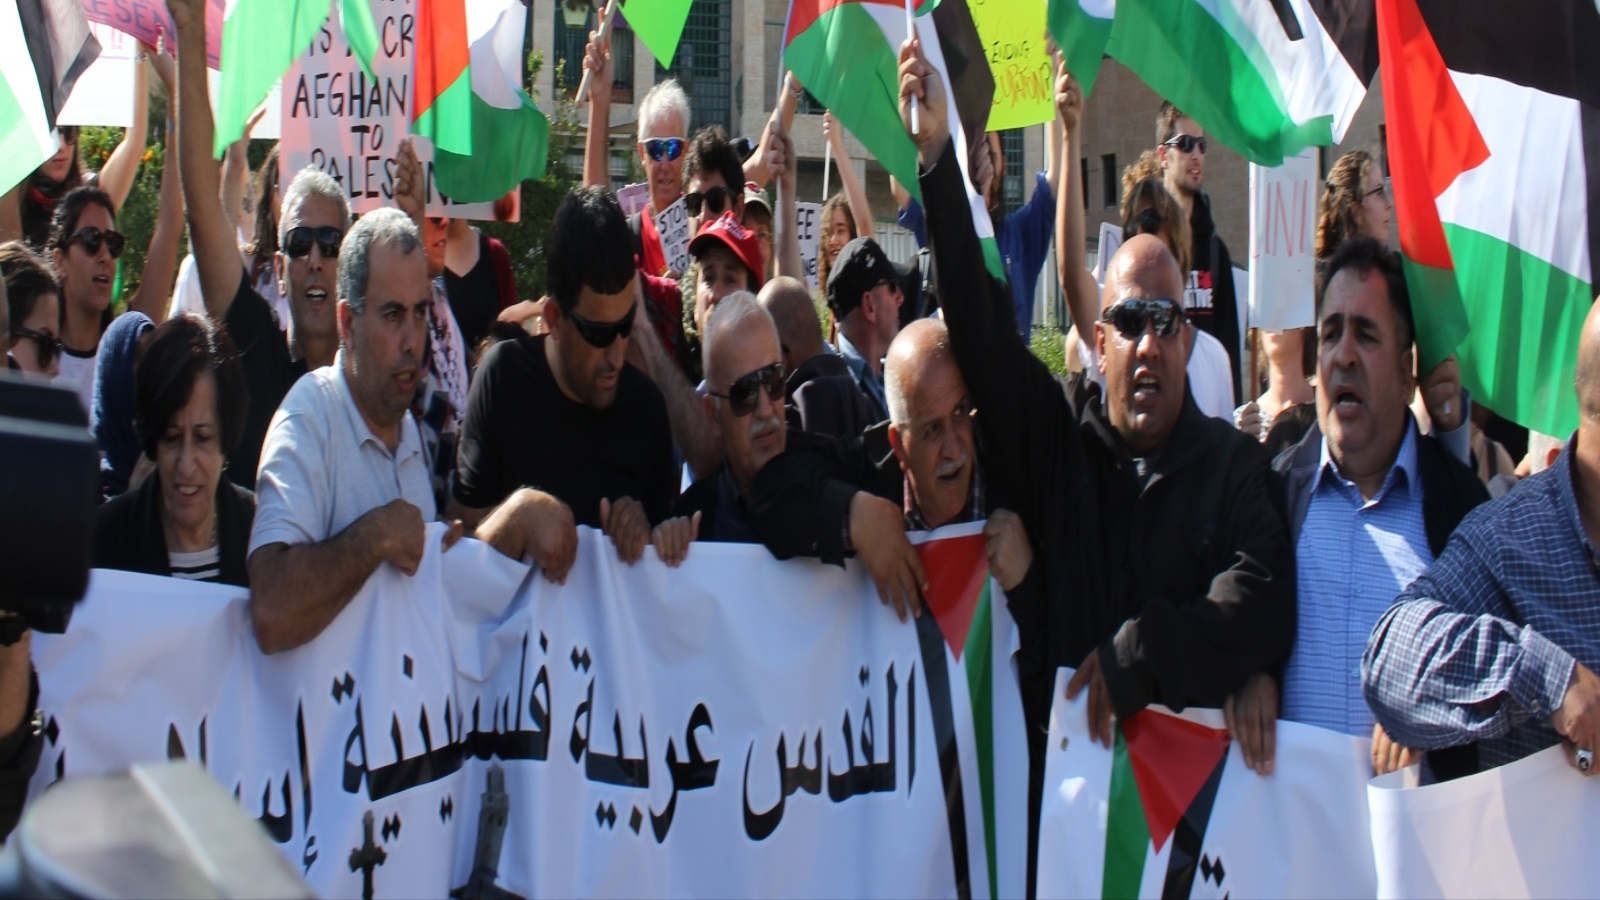 ‪مظاهرة للفلسطينيين ونشطاء إسرائيليين تزامنا مع افتتاح السفارة الأميركية في القدس‬ (الجزيرة)